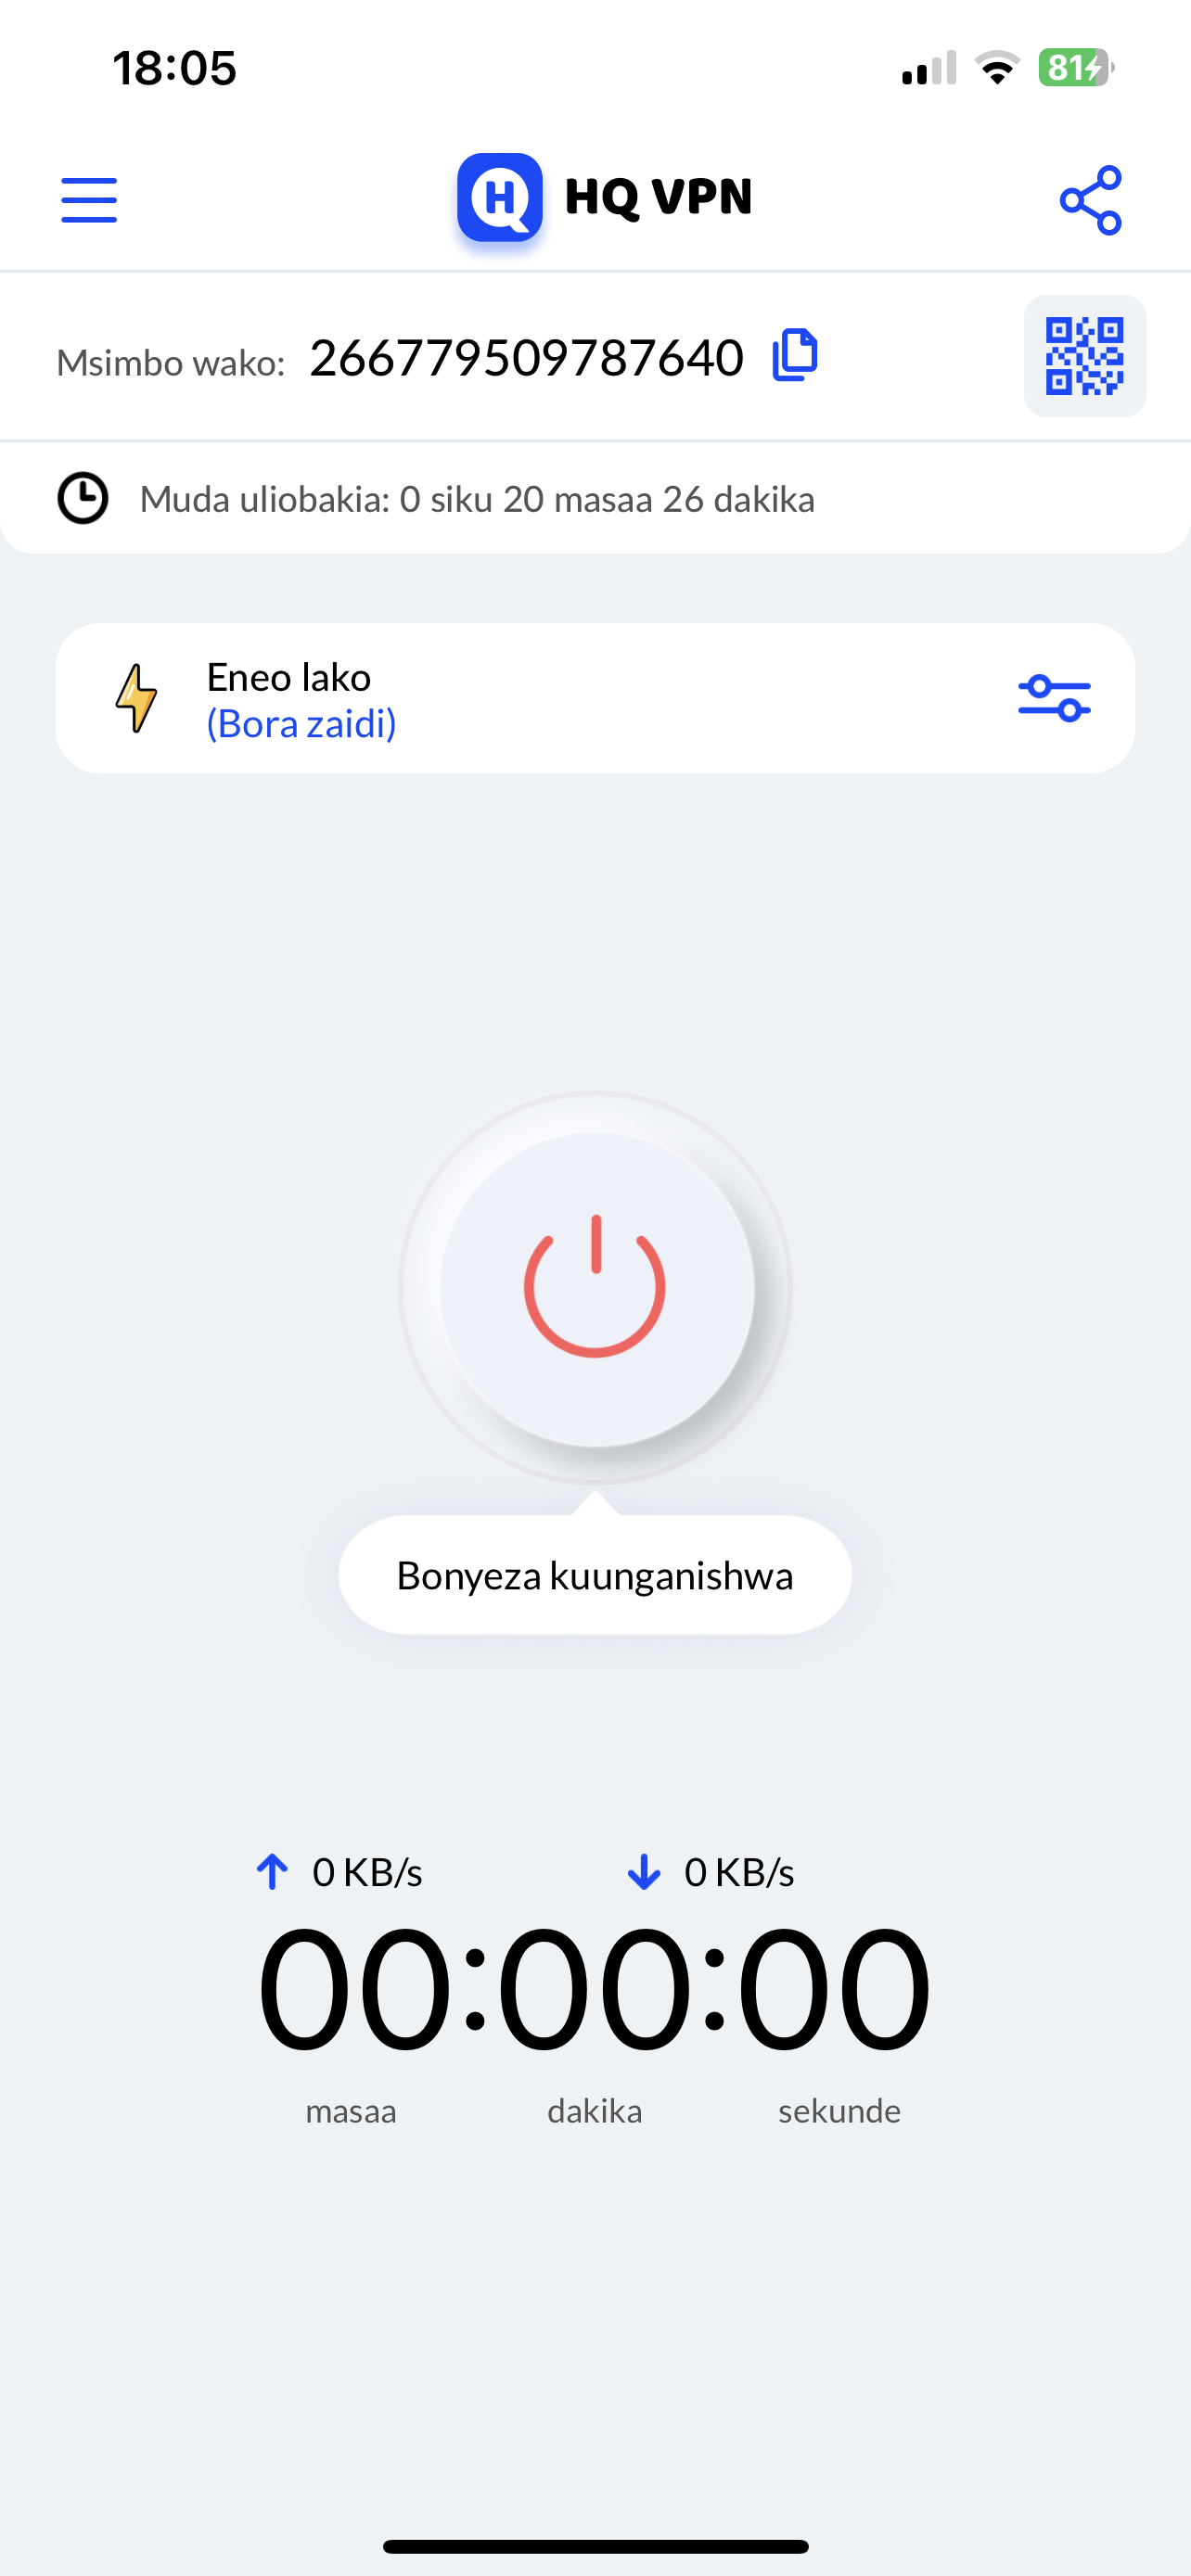 Bonyeza "Kuunganisha"